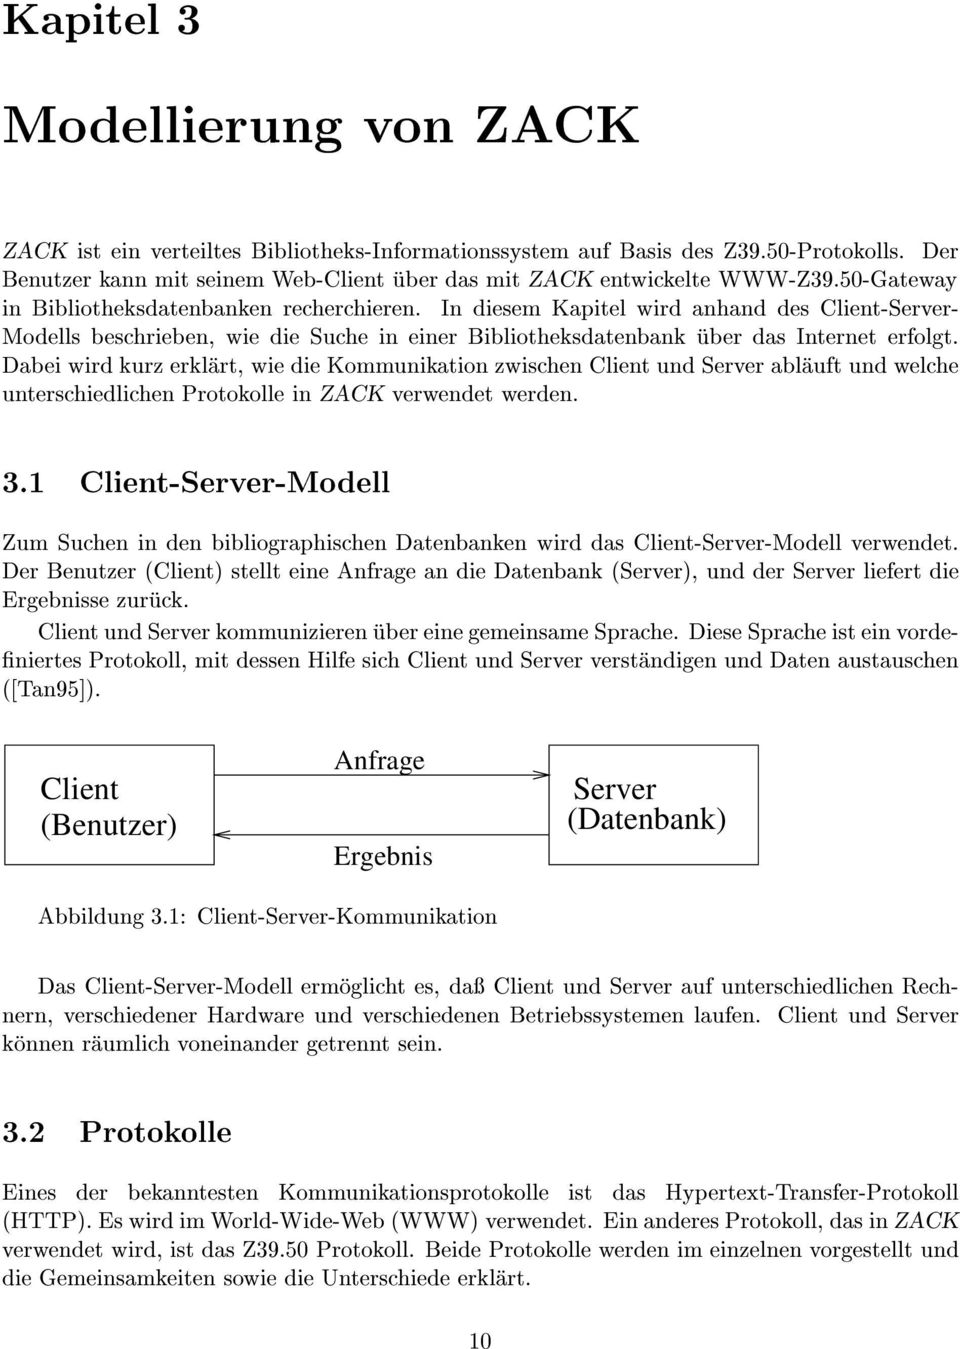 Dabei wird kurz erklart, wie die Kommunikation zwischen Client und Server ablauft und welche unterschiedlichen Protokolle in ZACK verwendet werden. 3.